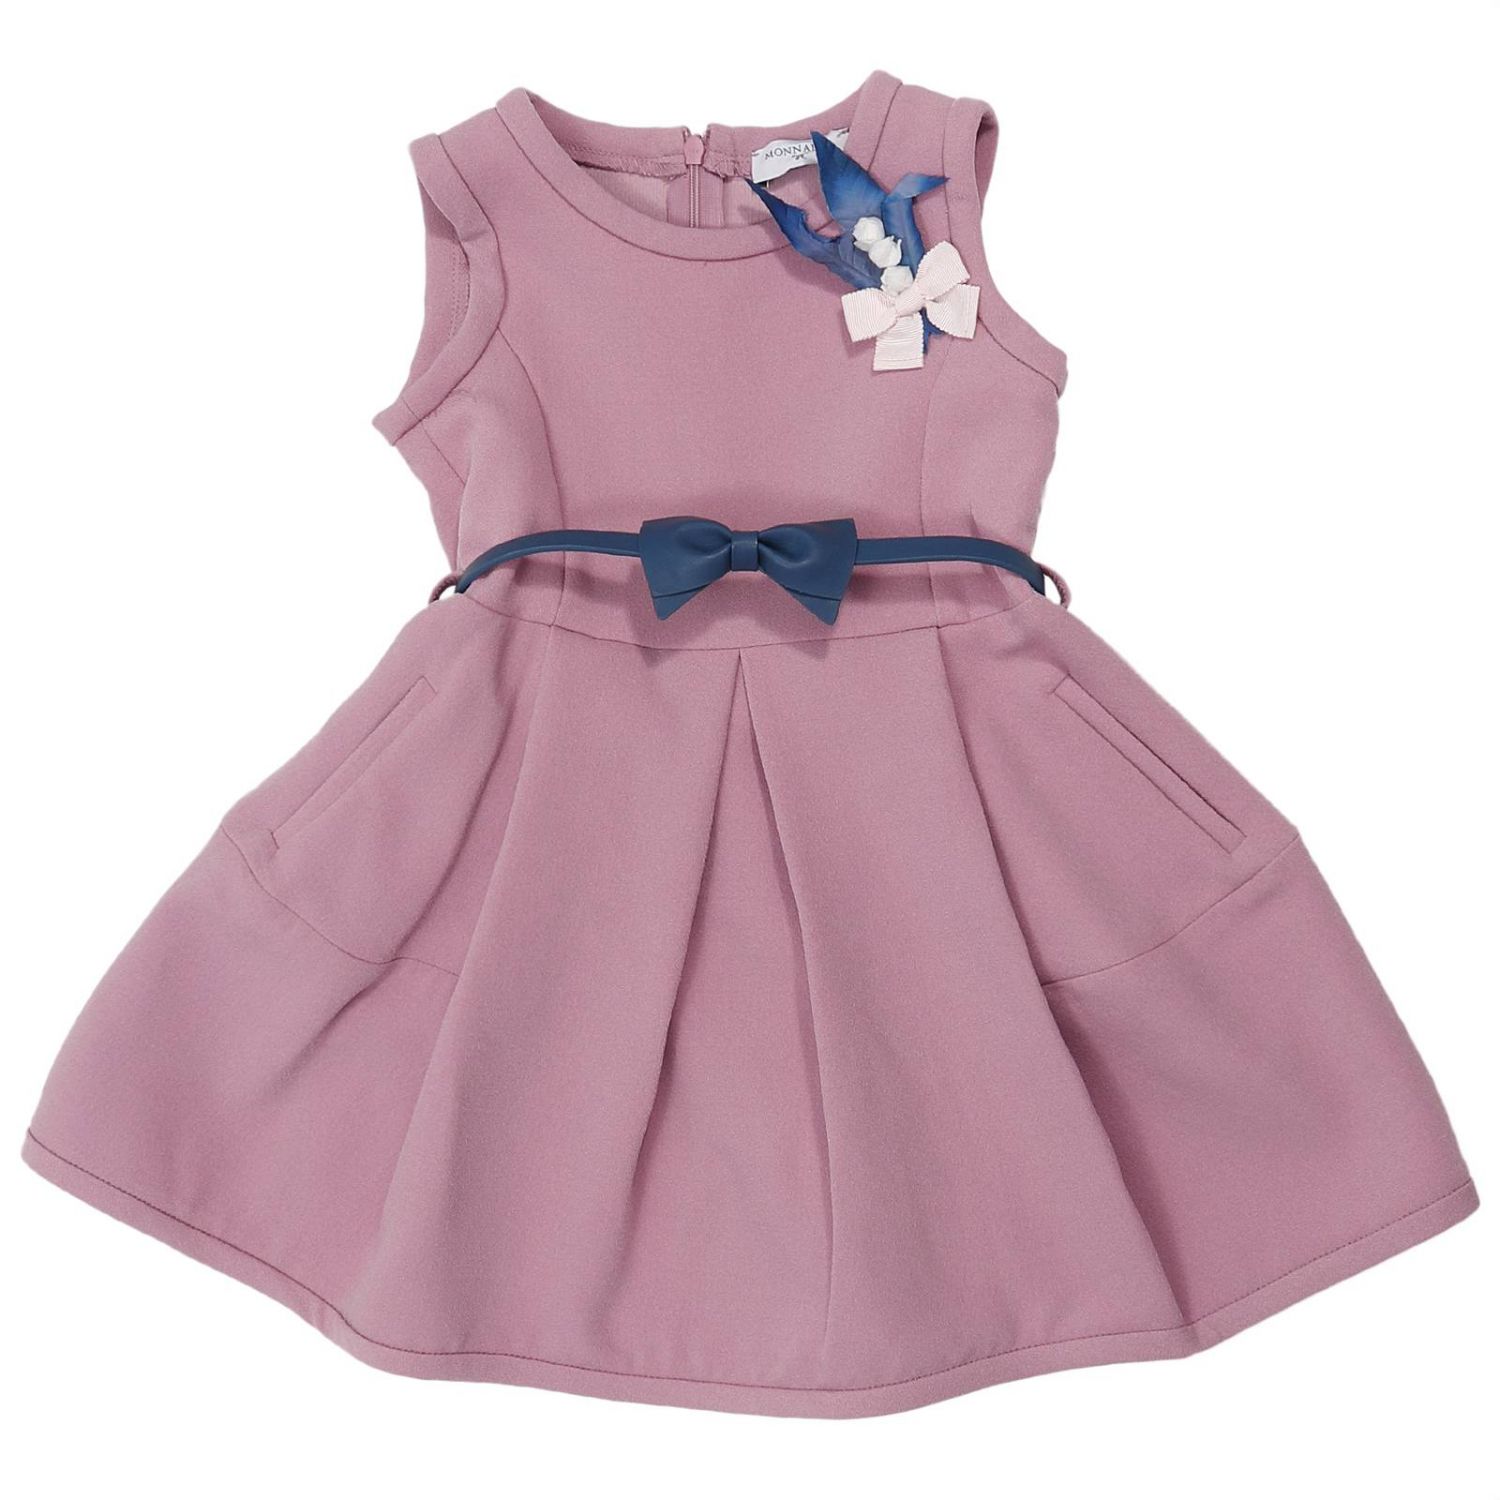 Dress kids Monnalisa | Dress Monnalisa Kids Pink | Dress Monnalisa ...